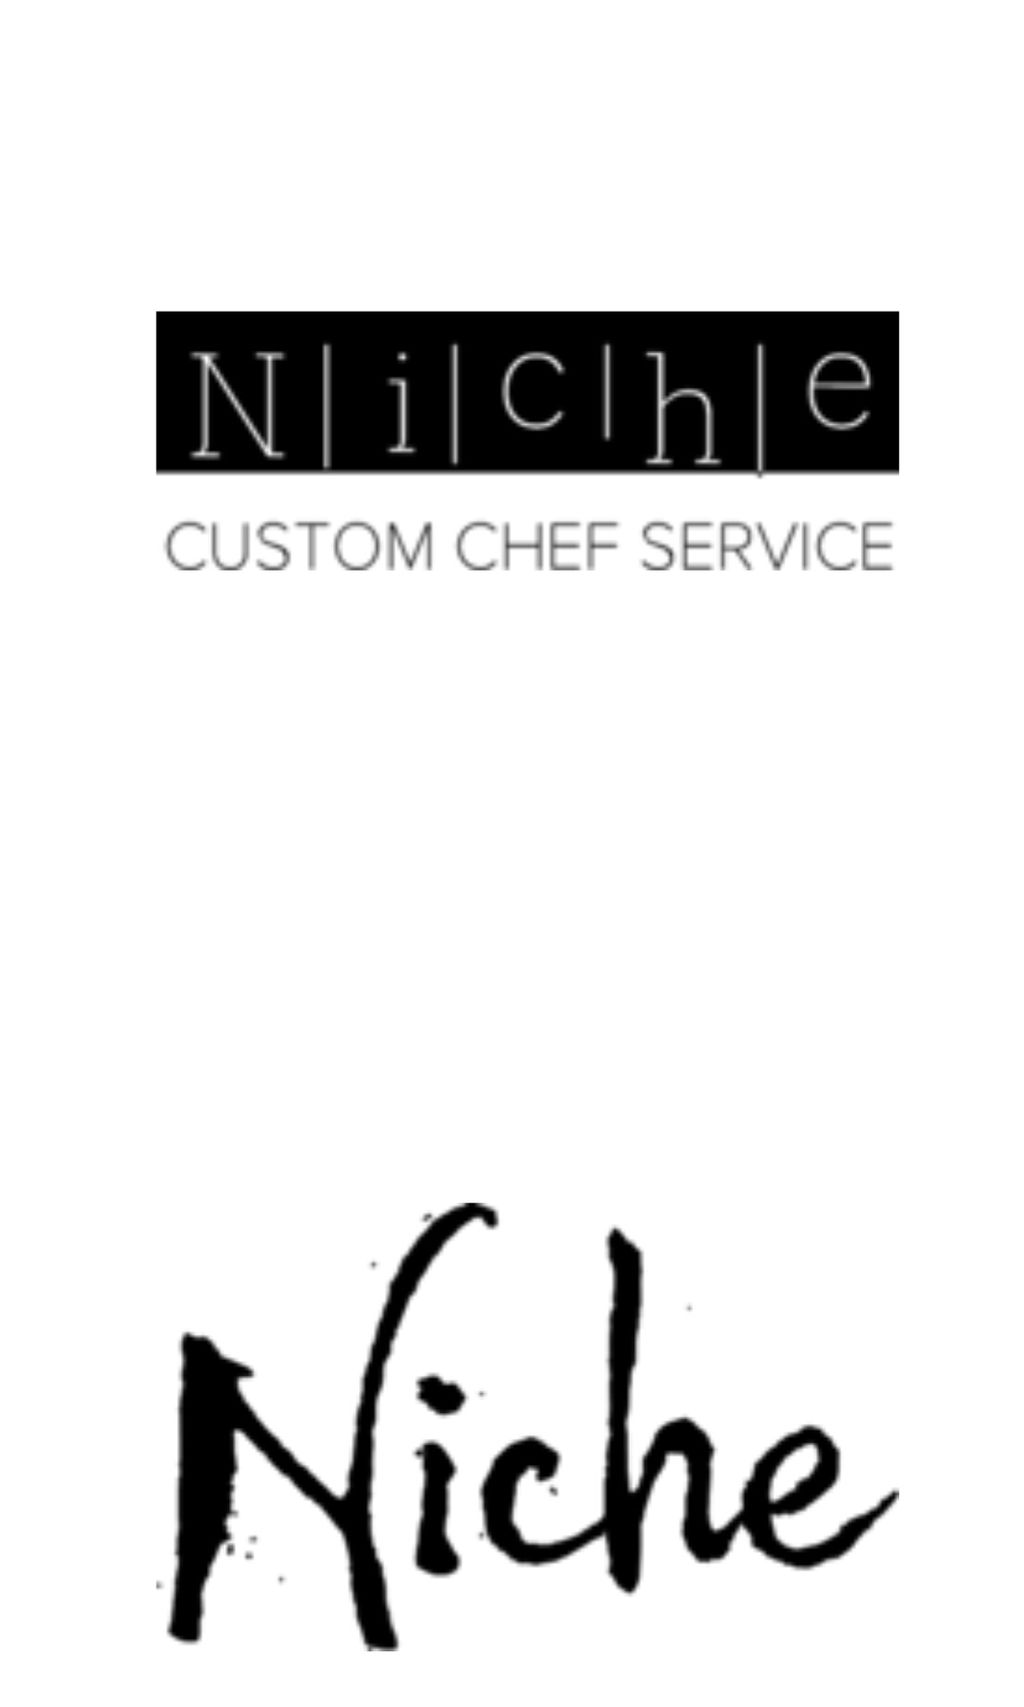 Niche Custom Chef Services